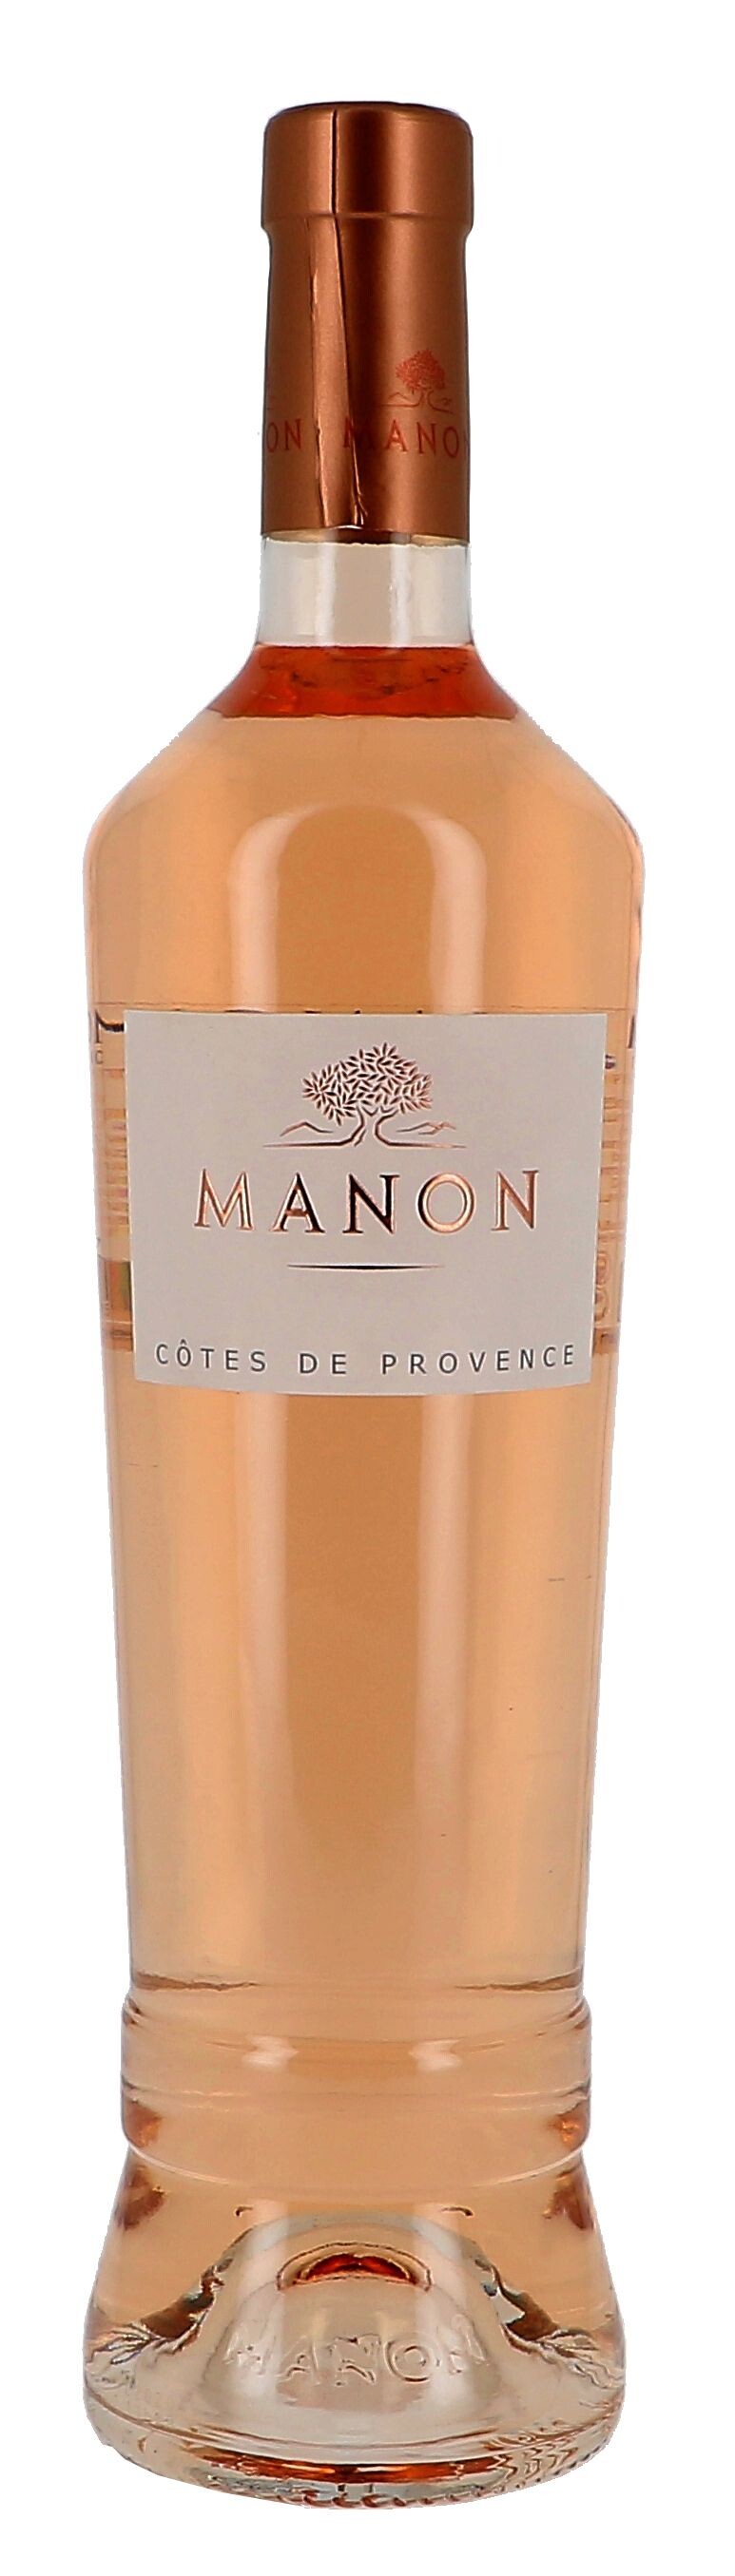 Manon rose 75cl Cotes de Provence